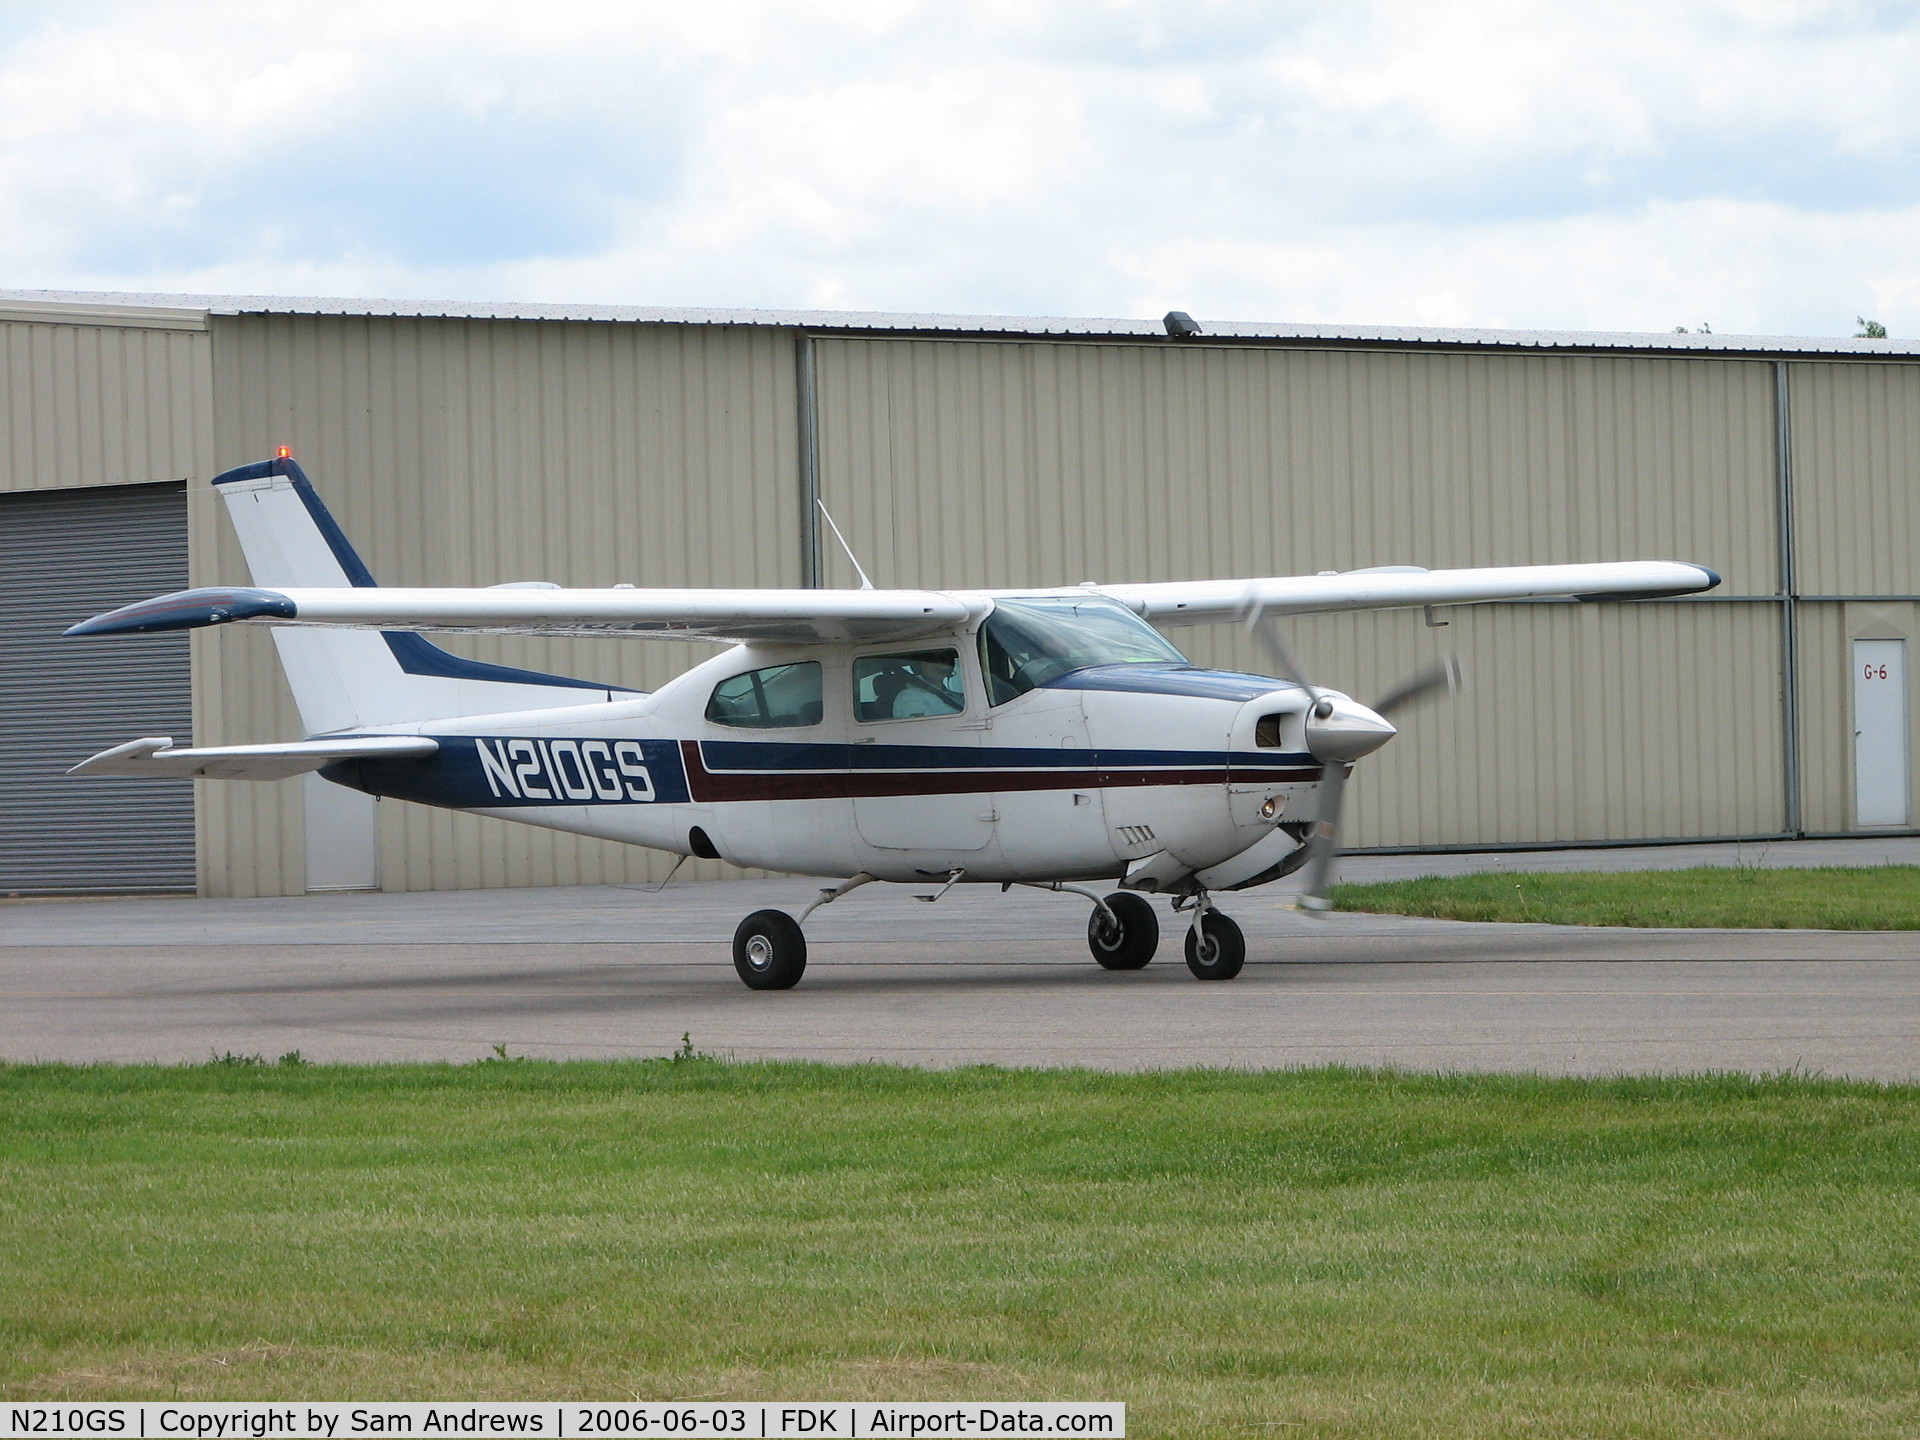 N210GS, 1976 Cessna 210L Centurion C/N 21061283, still taxiing